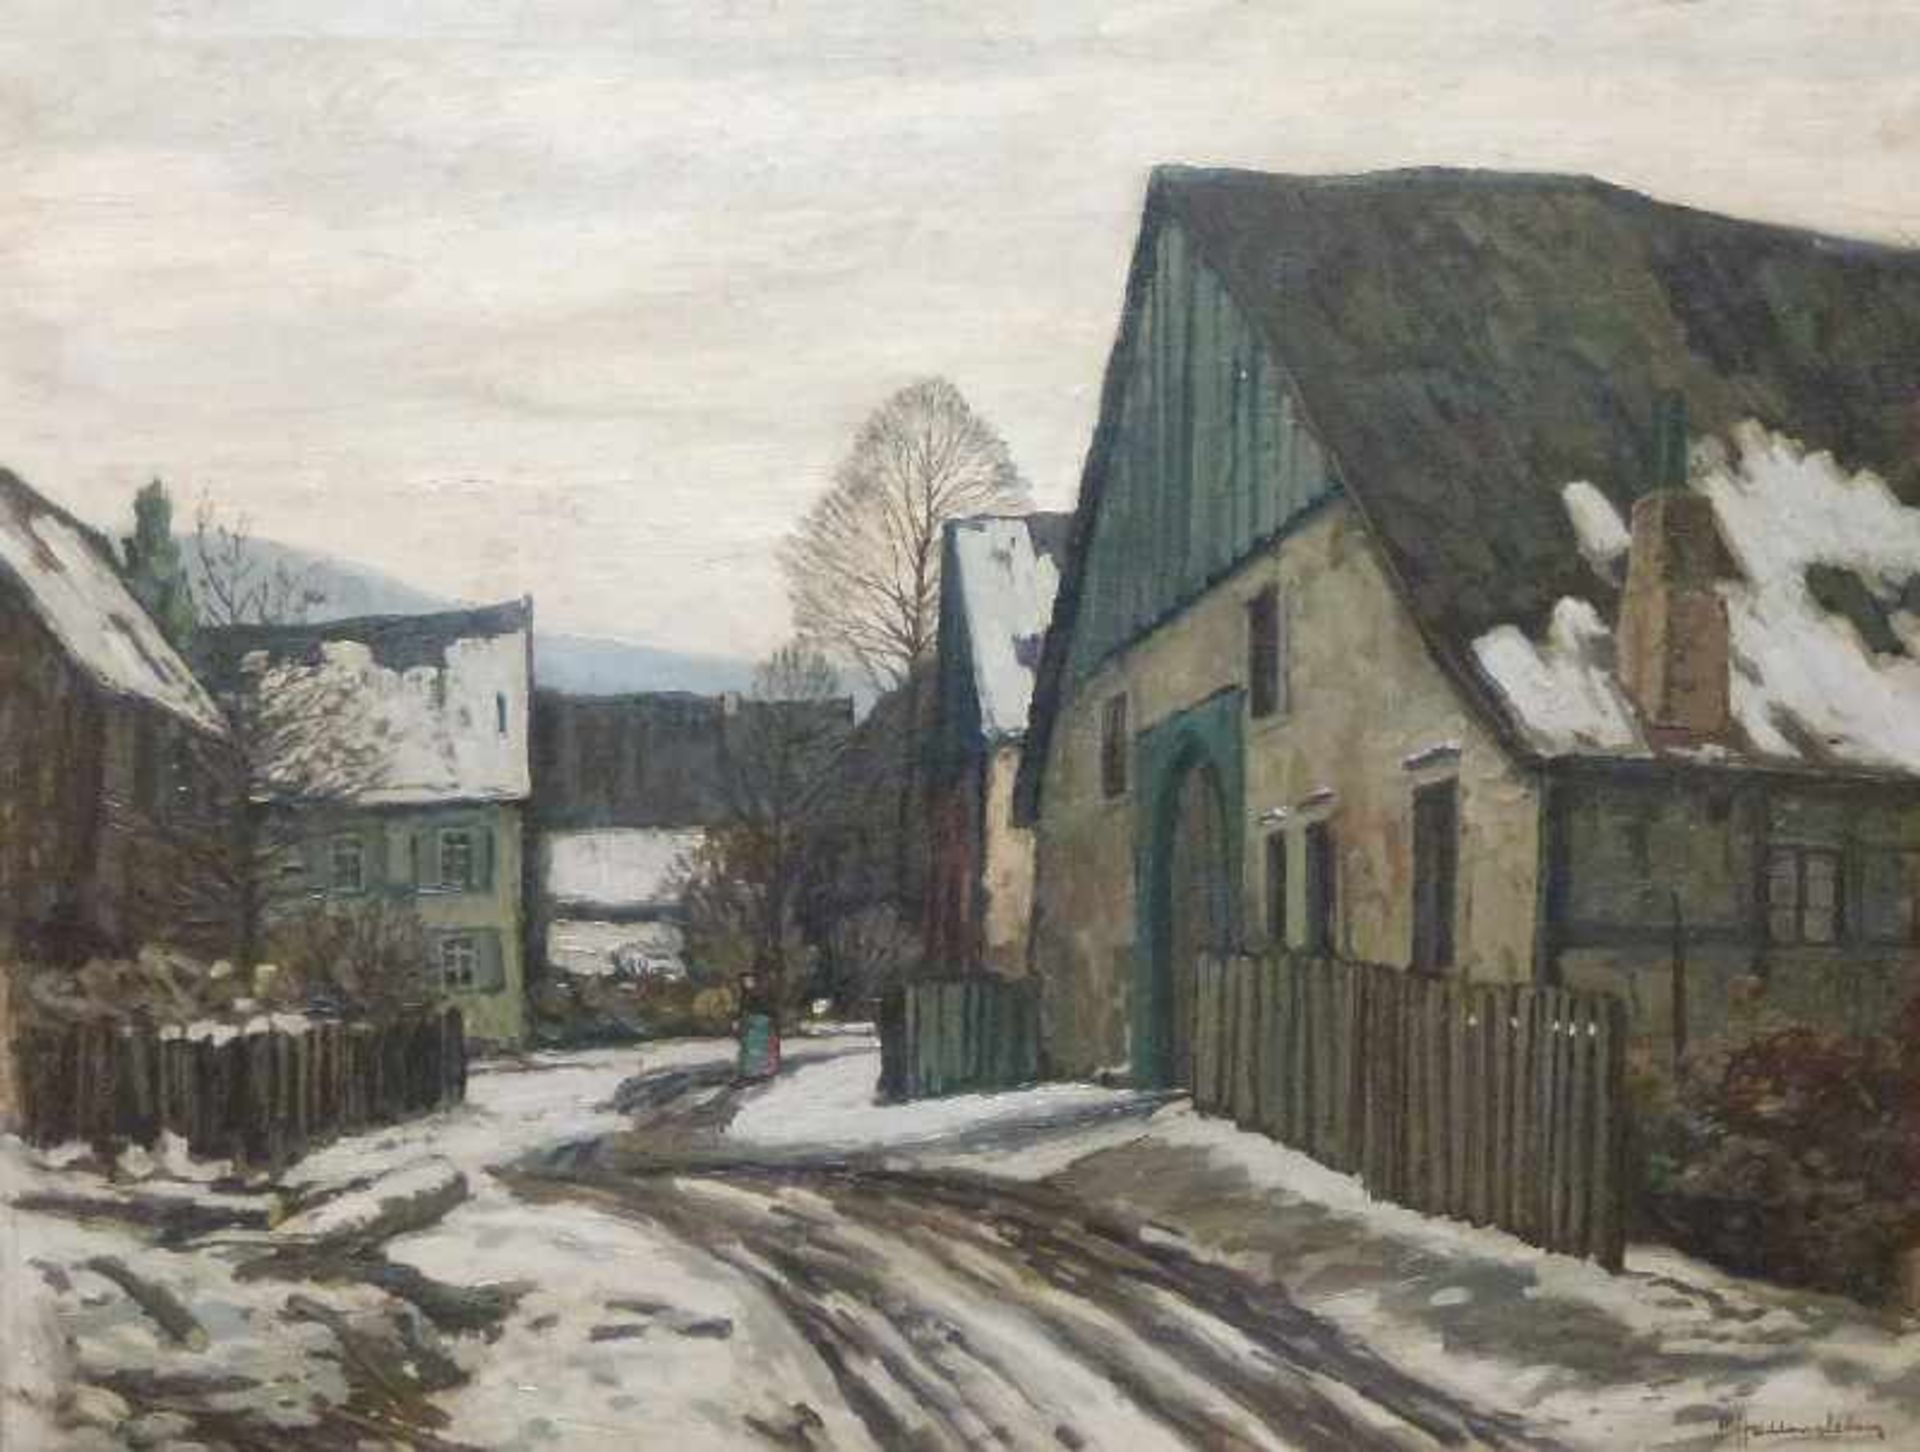 Dorfstraße im Winter, Max Hallensleben um 1900 Öl/Lw, sign., Bäuerin zwischen Höfen im Schnee,